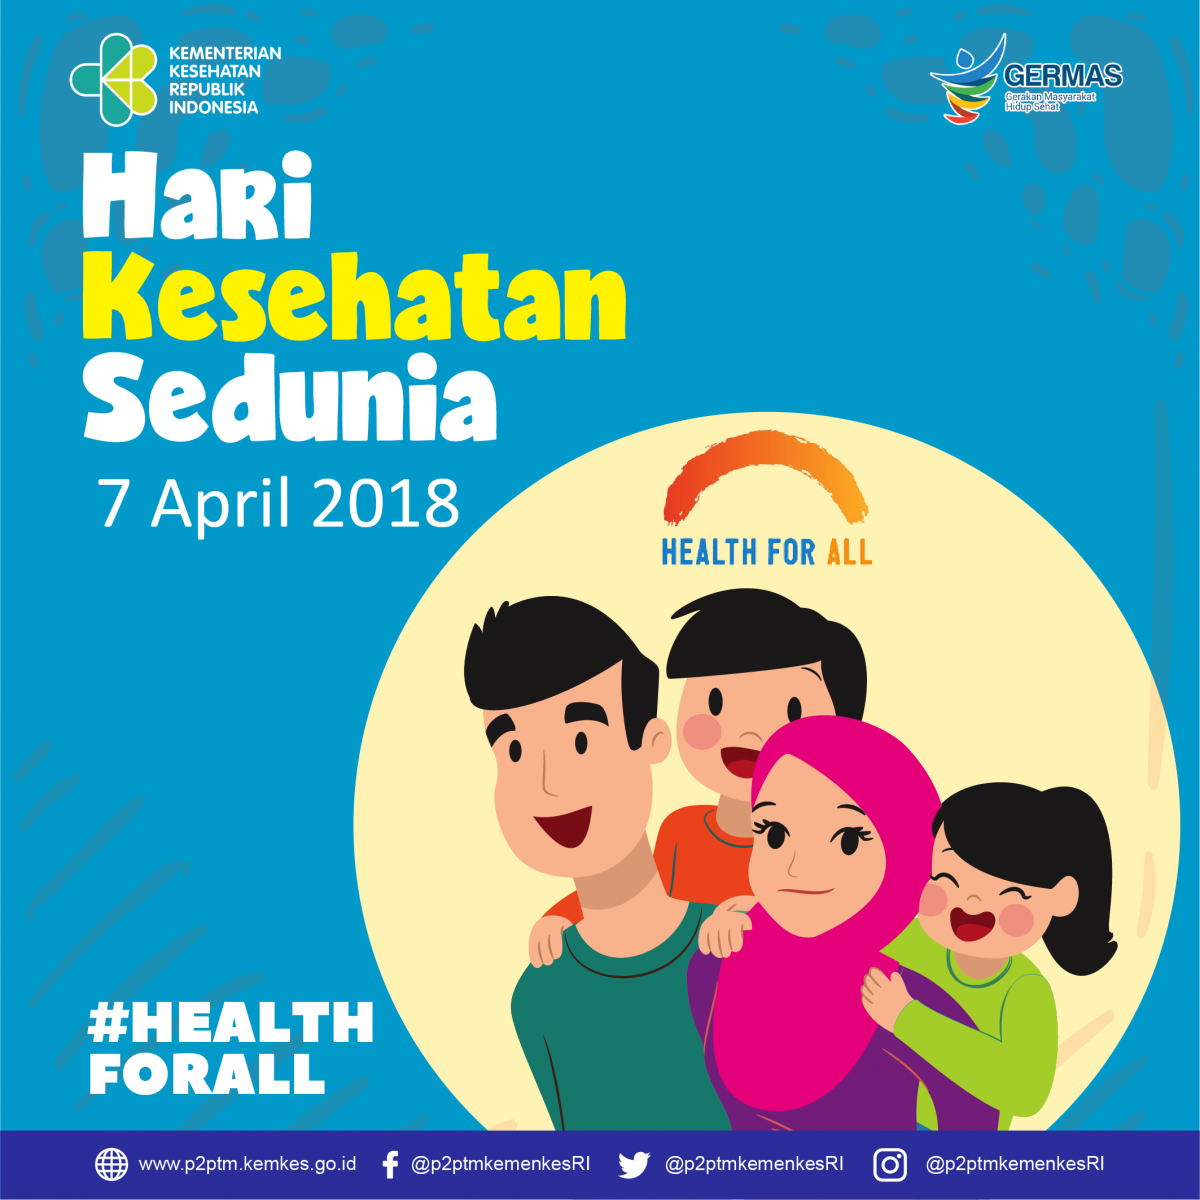 Hari Kesehatan Sedunia 7 April 2018